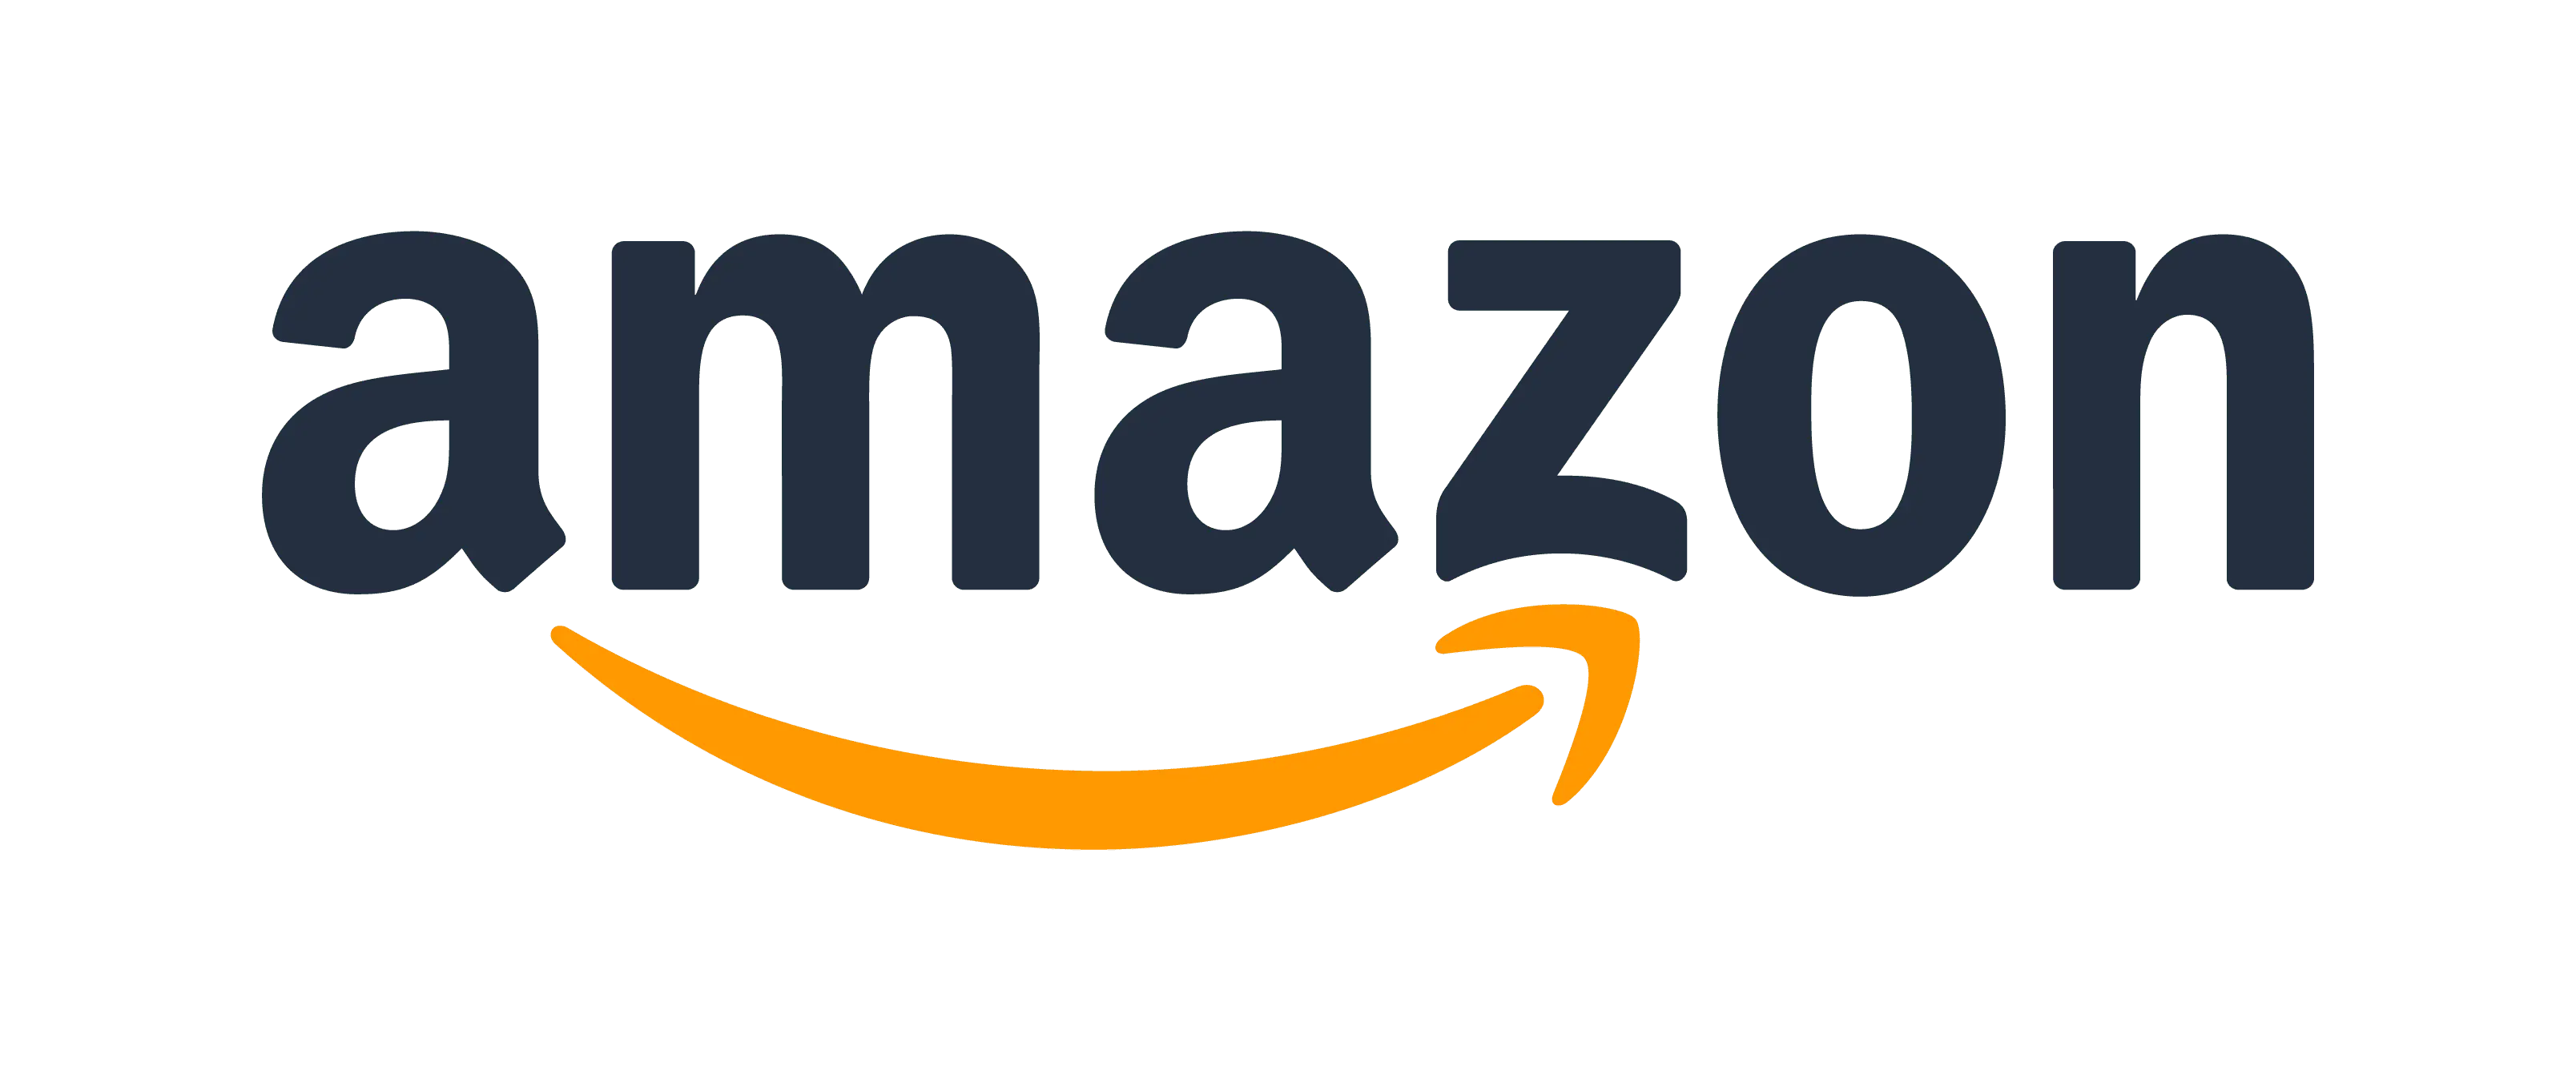 logo Amazon meilleur cashback promo marque gain économie